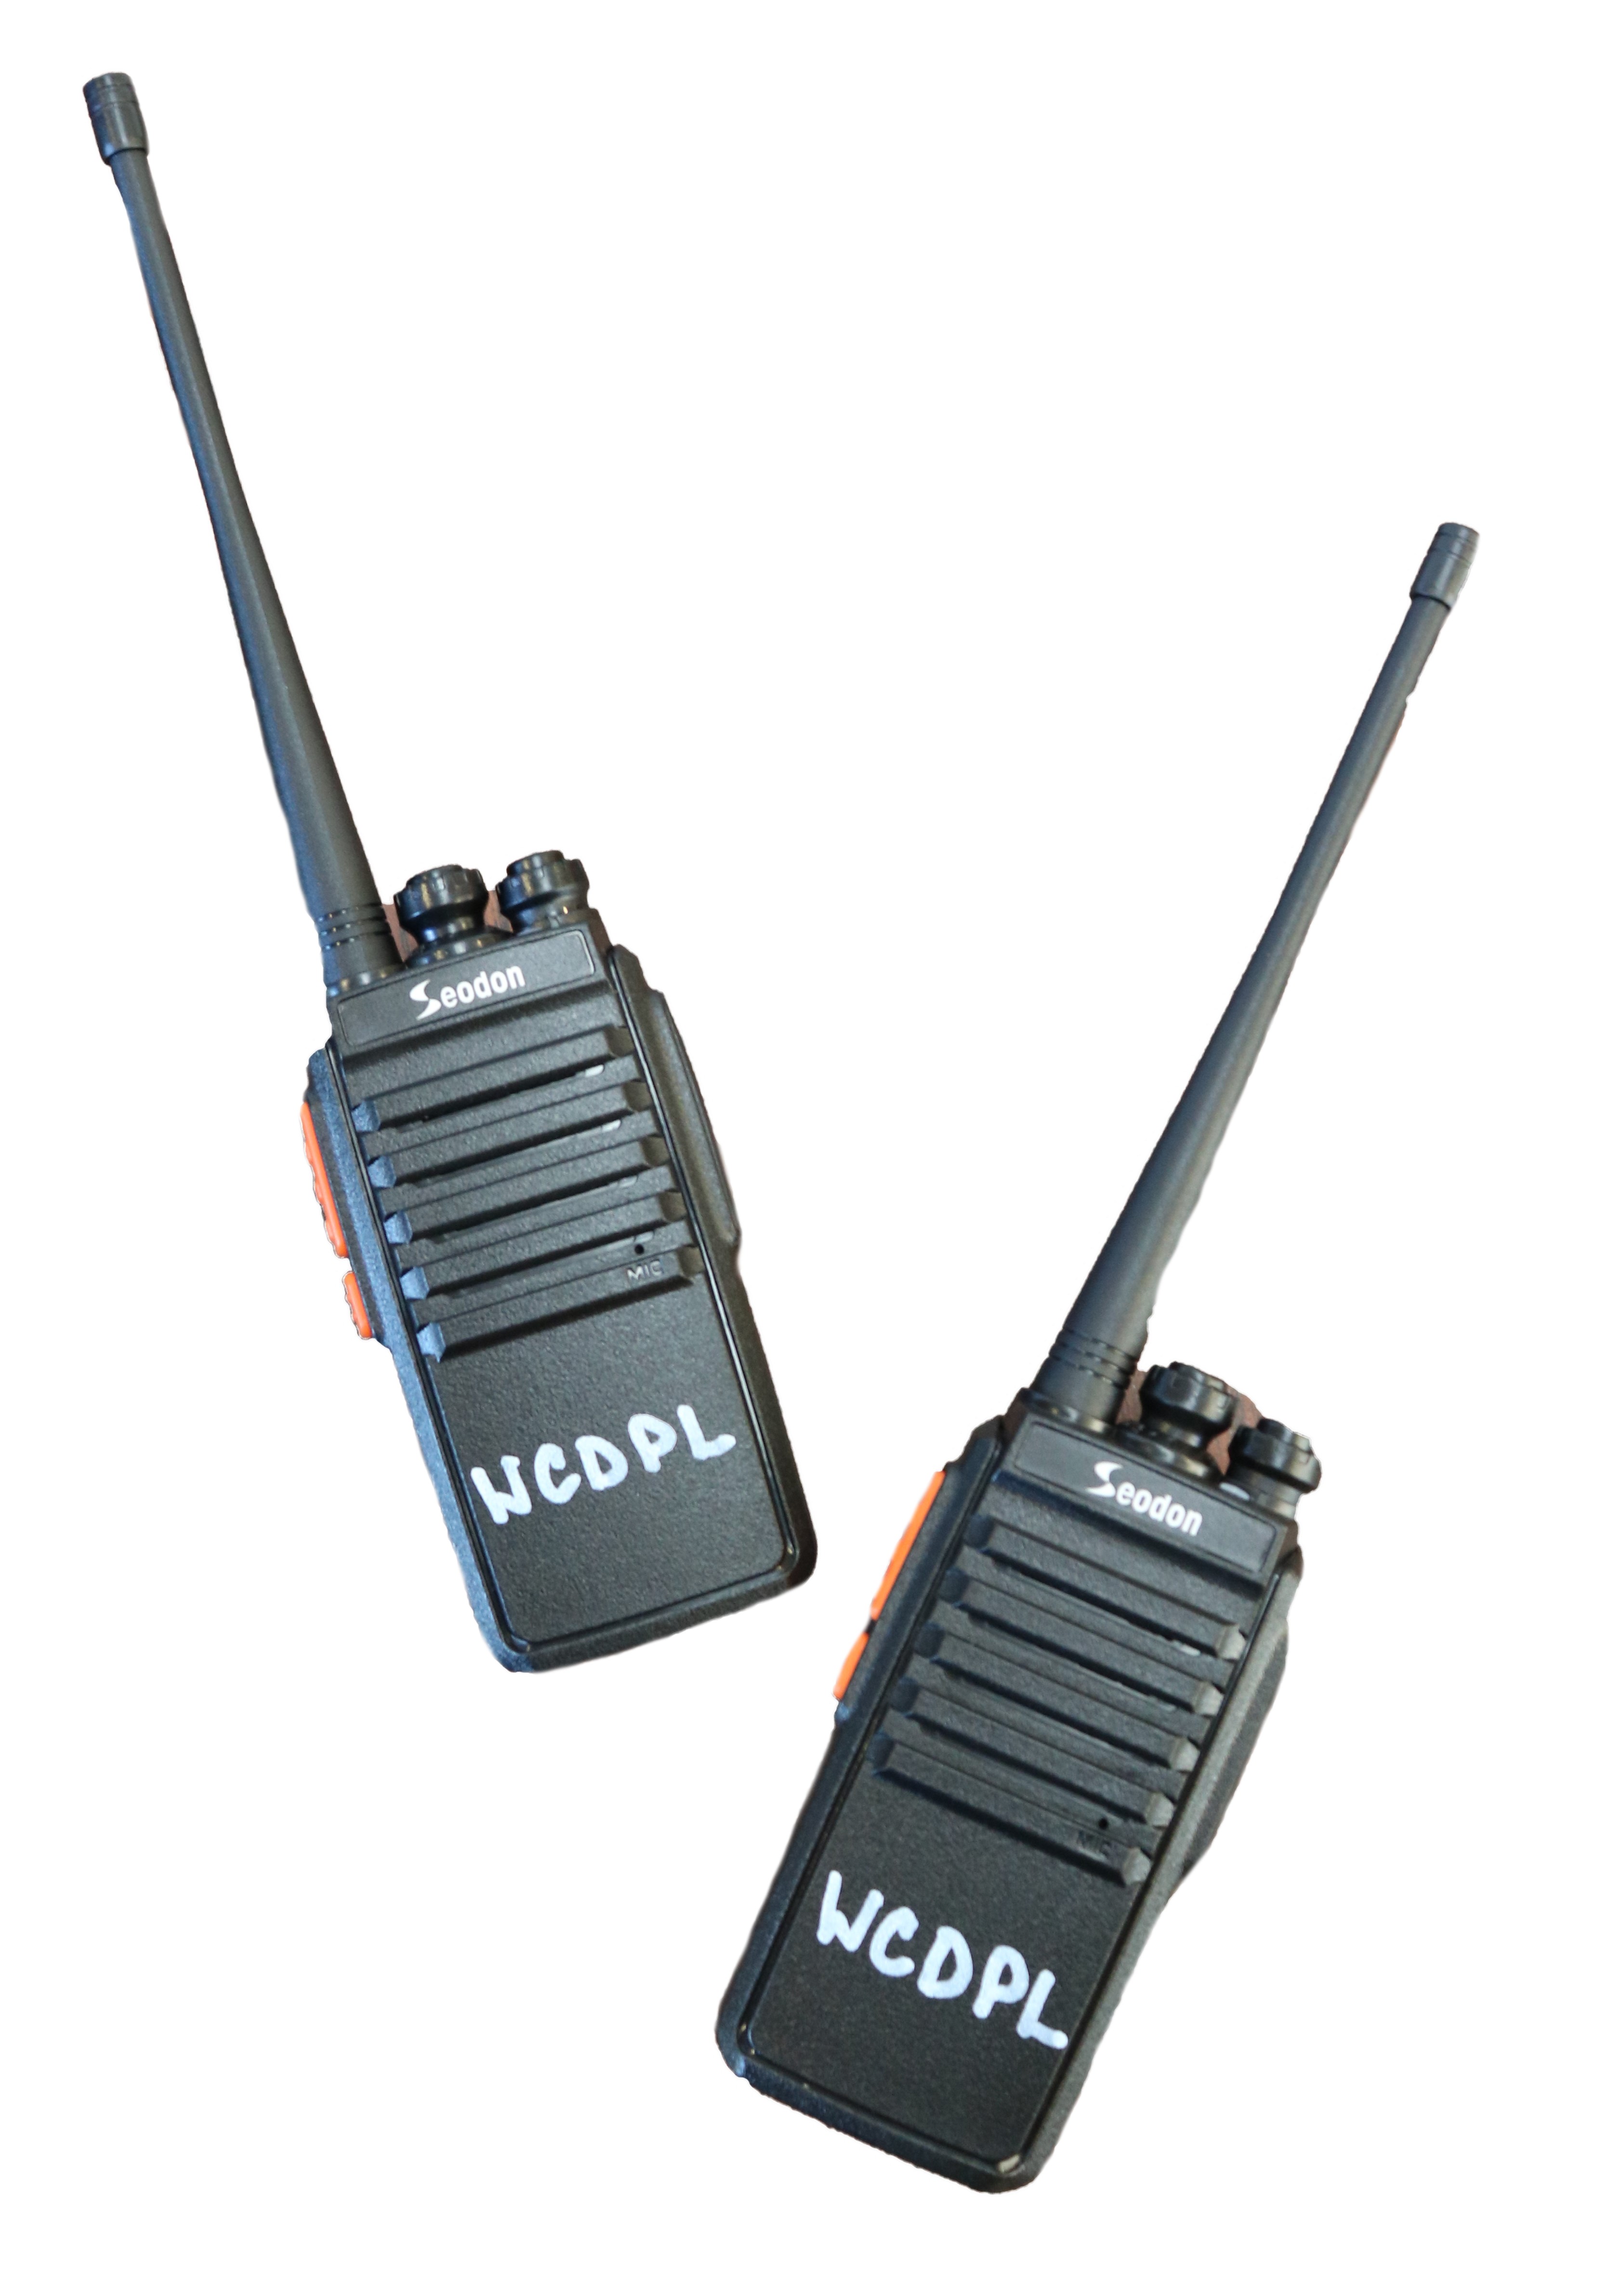 Two black walkie-talkie radios